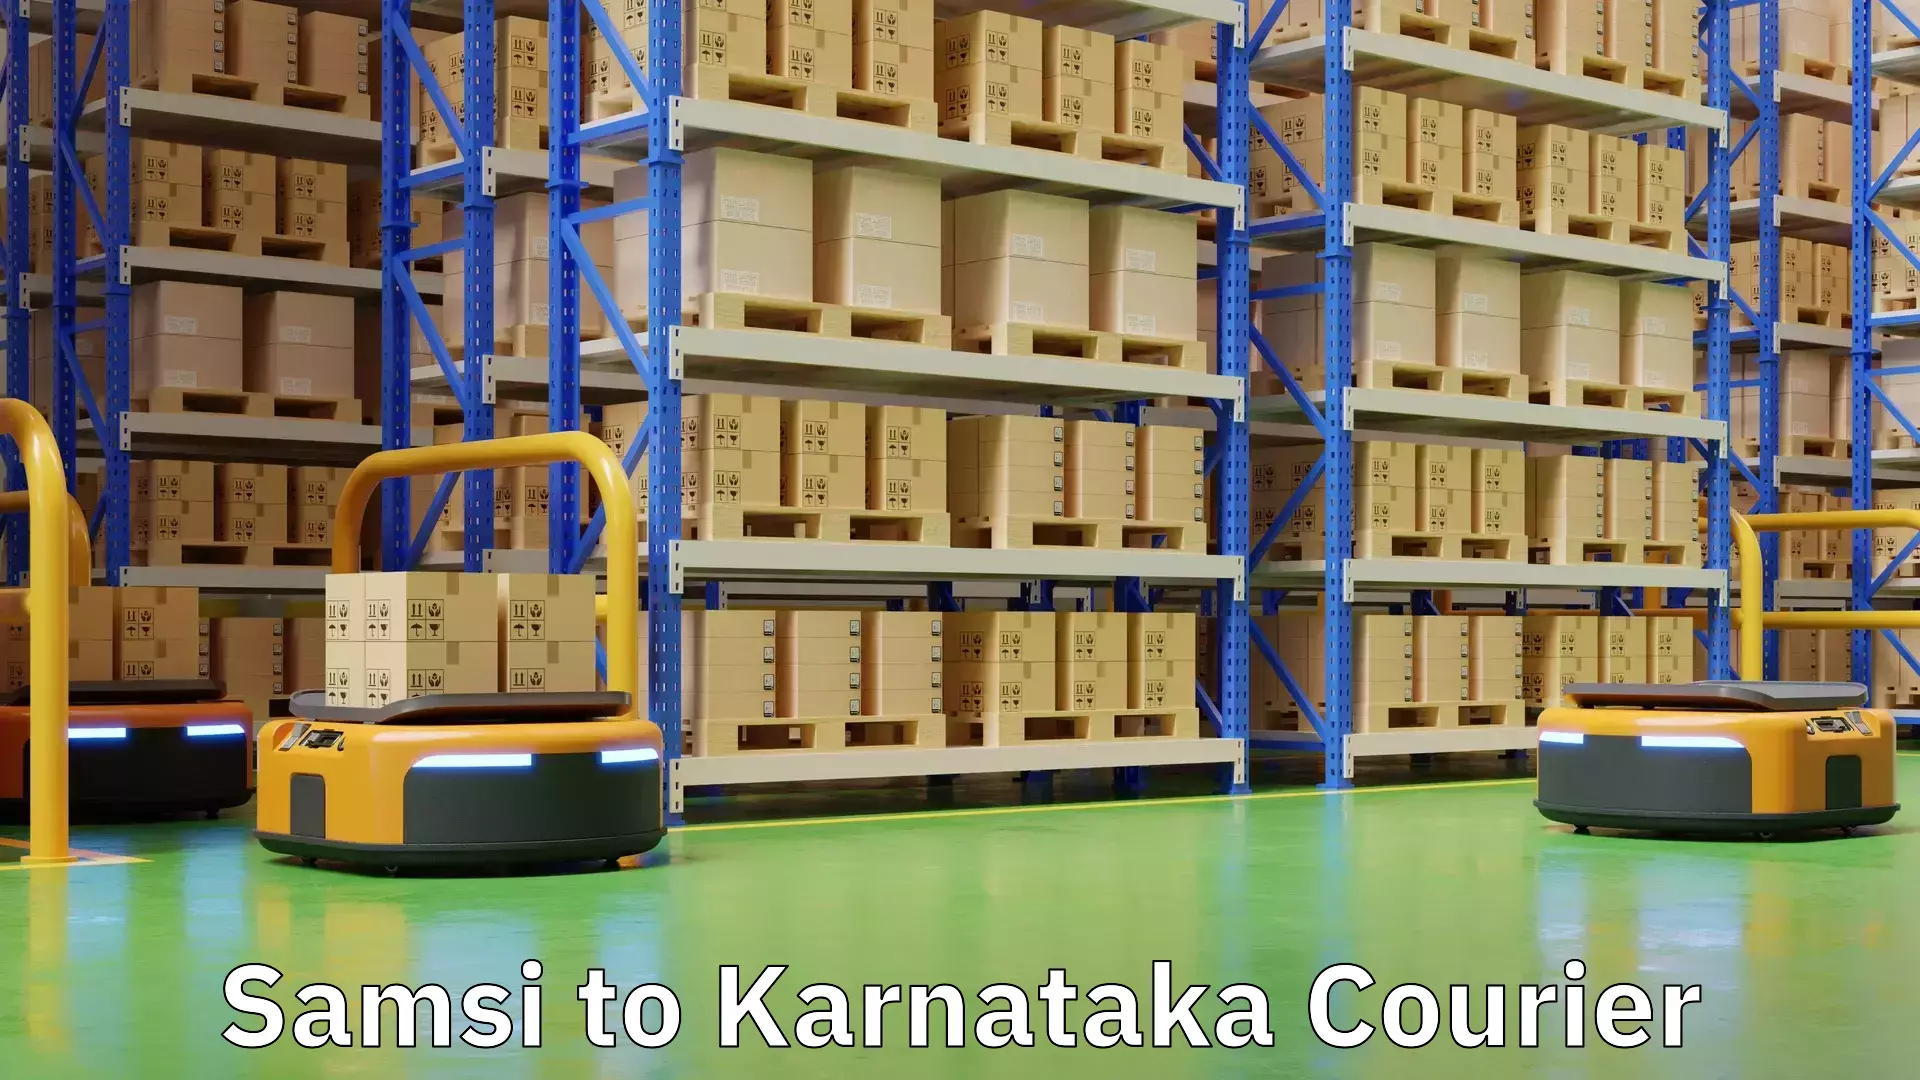 On-call courier service Samsi to Karnataka